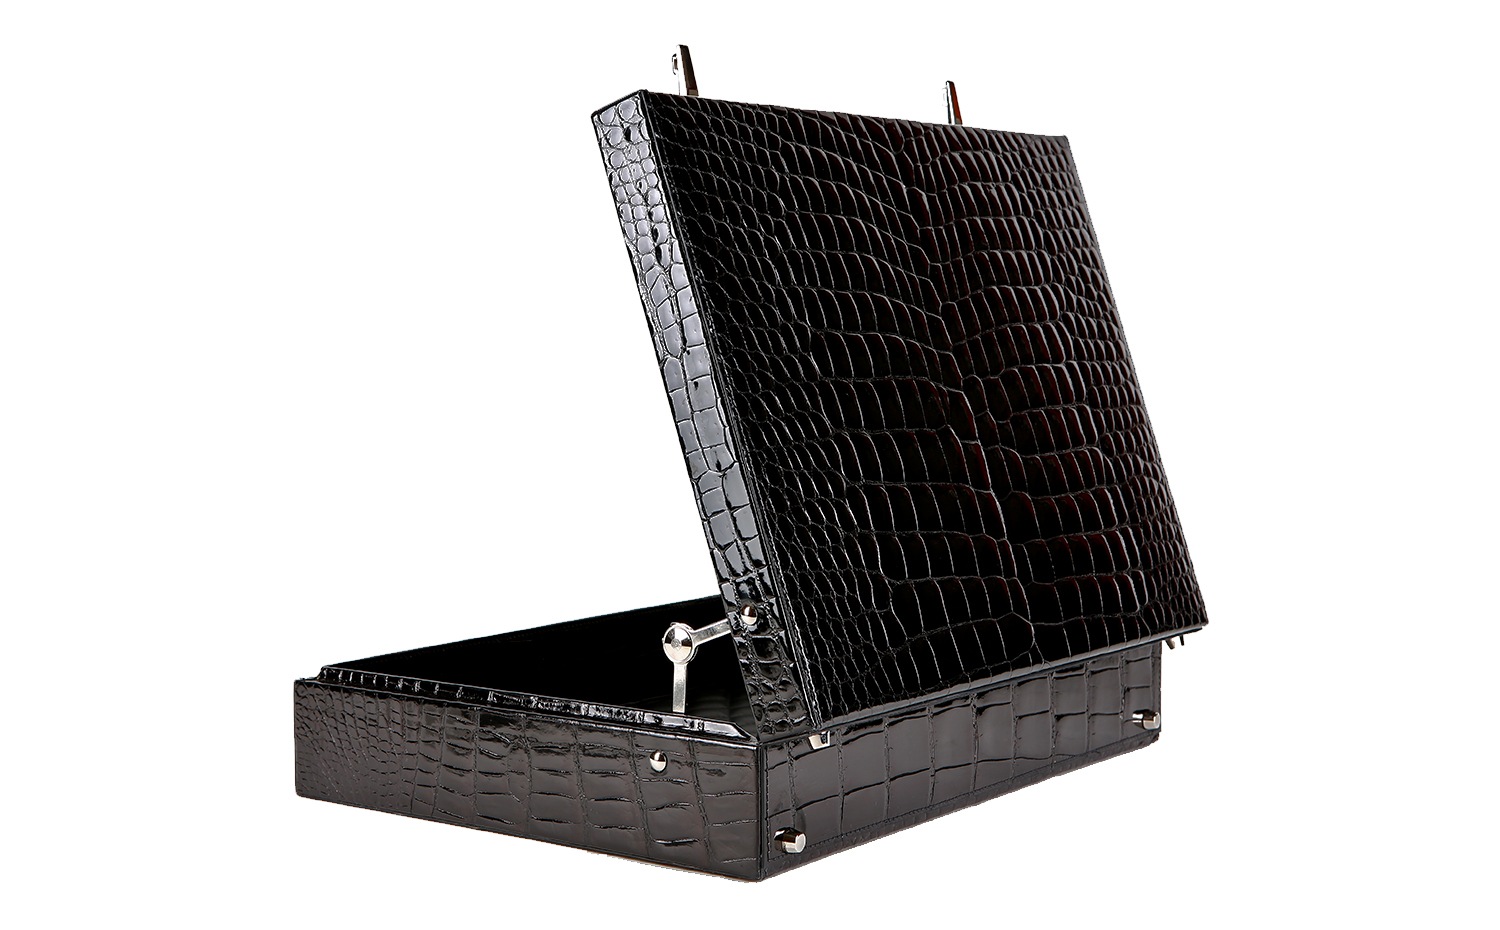 KWANPEN Men's Boutique: Crocodile Leather Attache Briefcase in Black